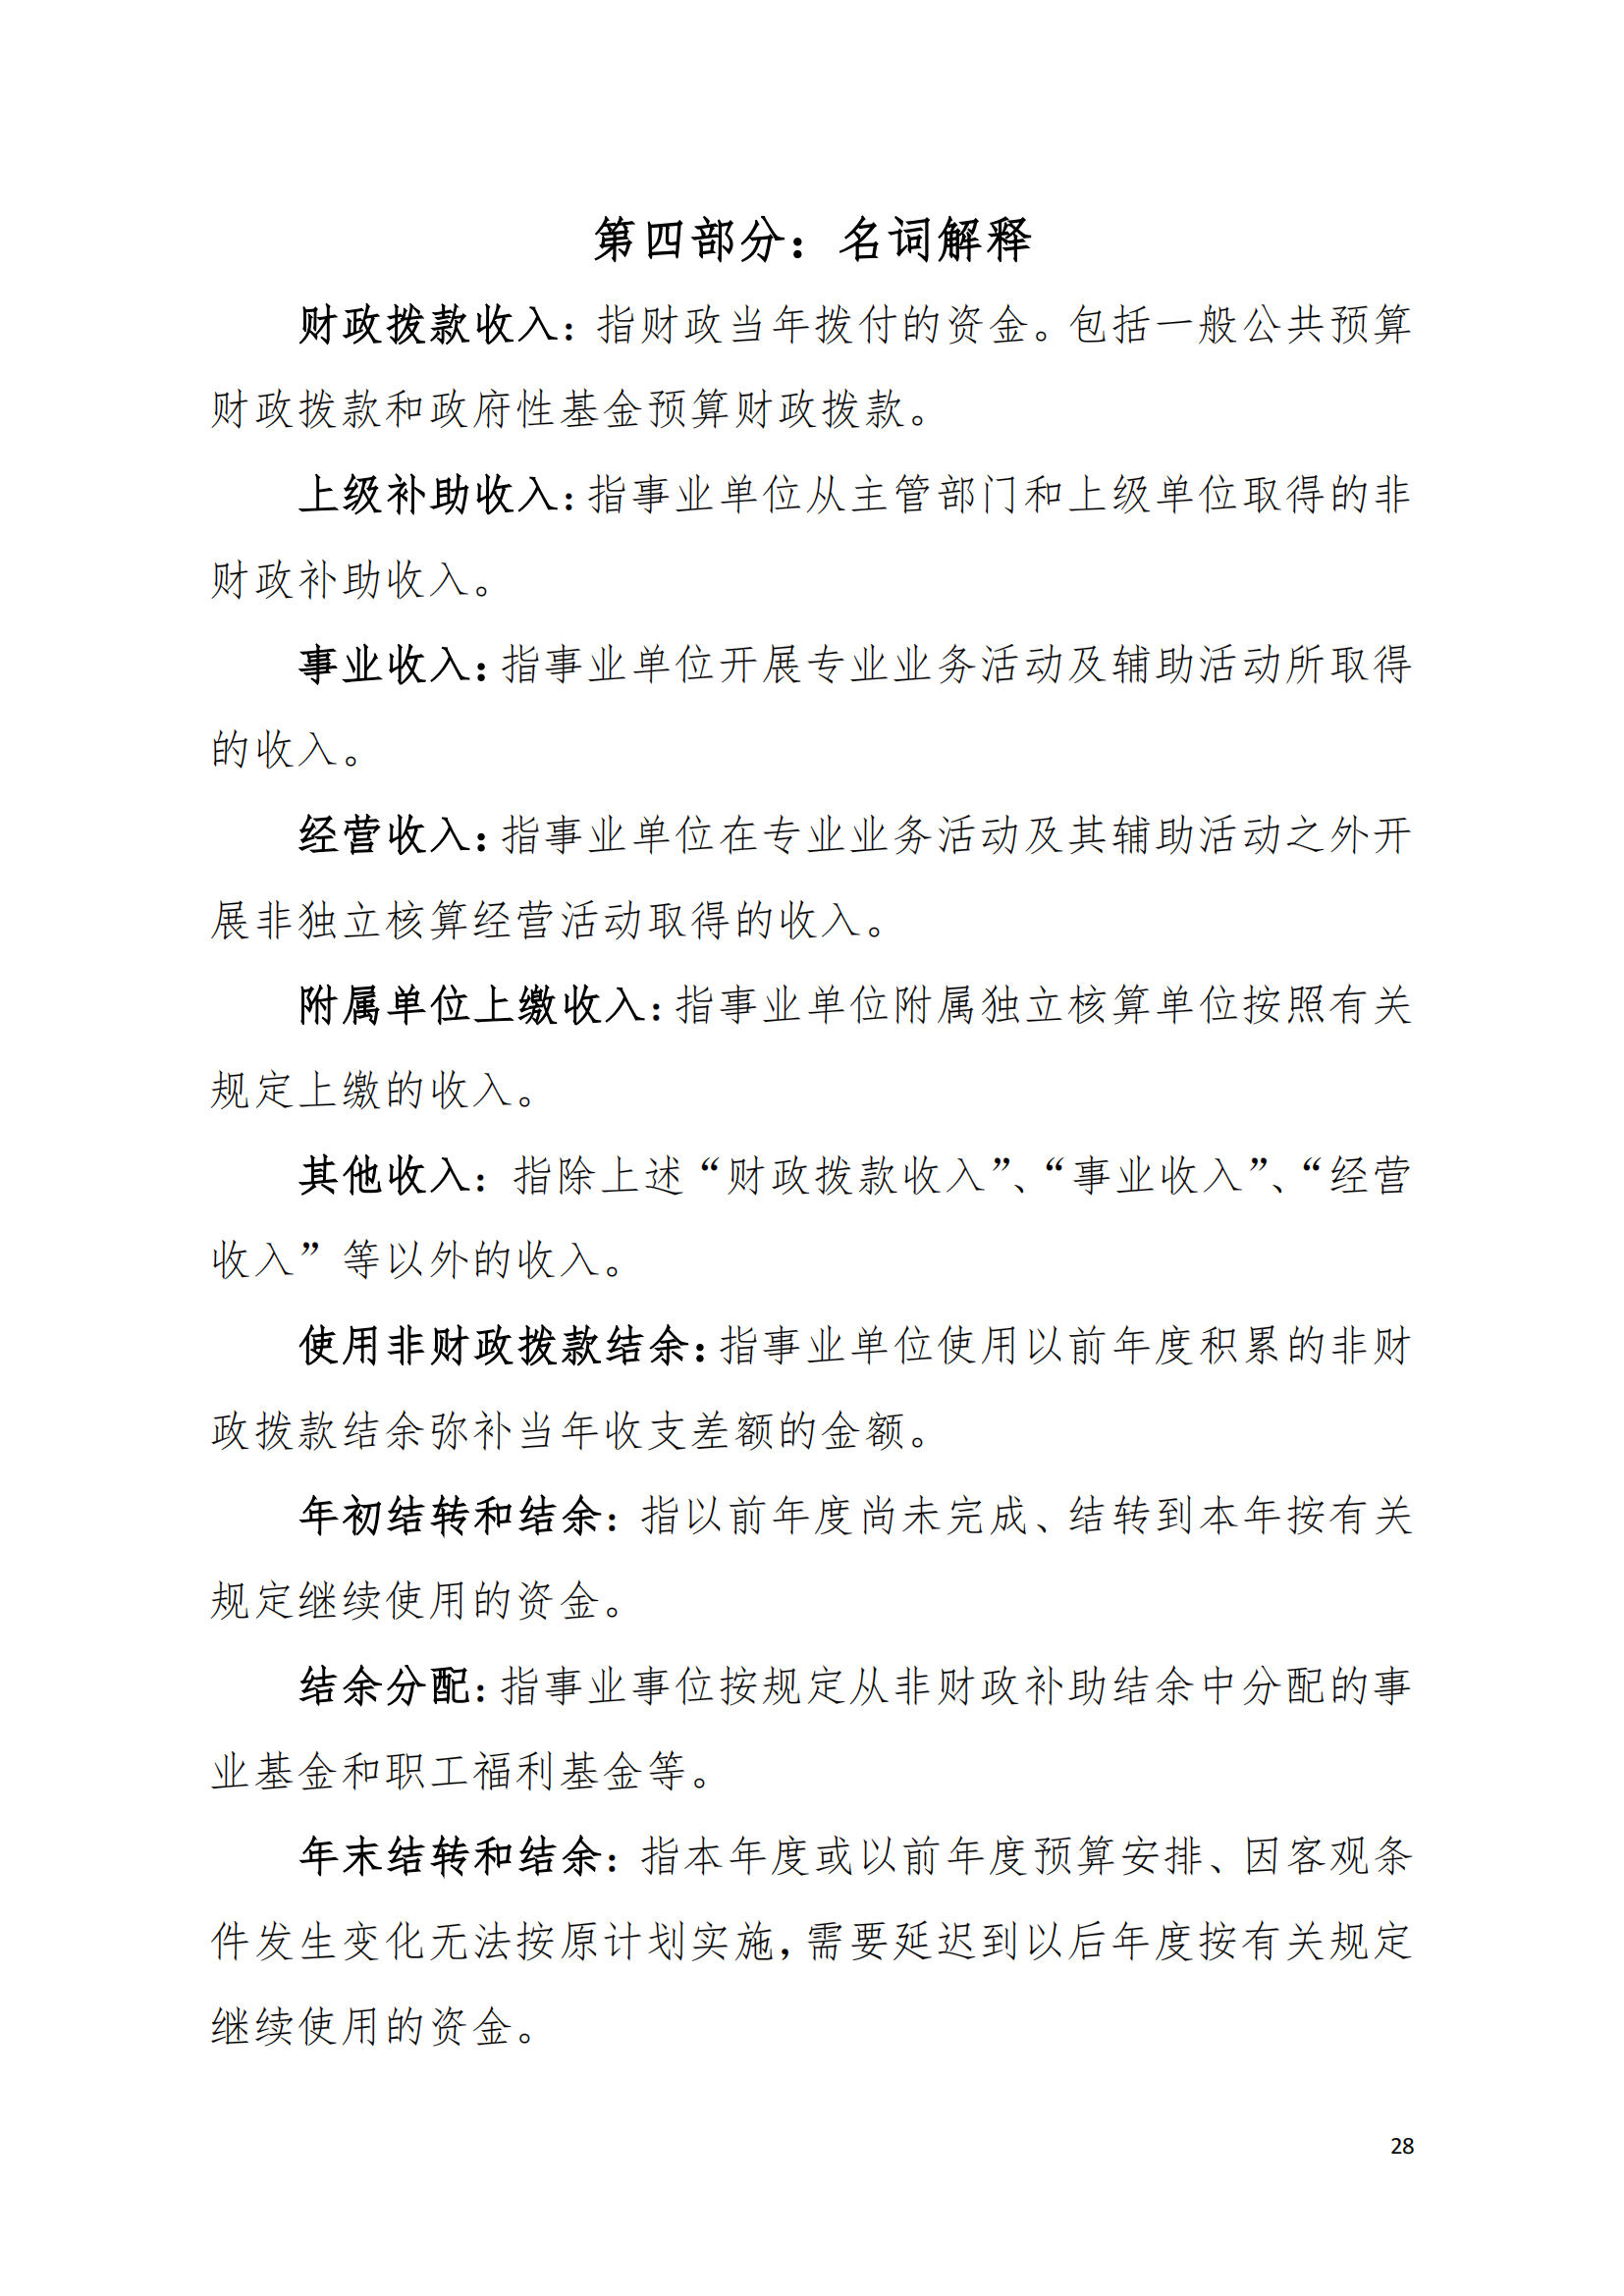 2021年中国致公党广东省委员会部门决算（0706更新）_27.png